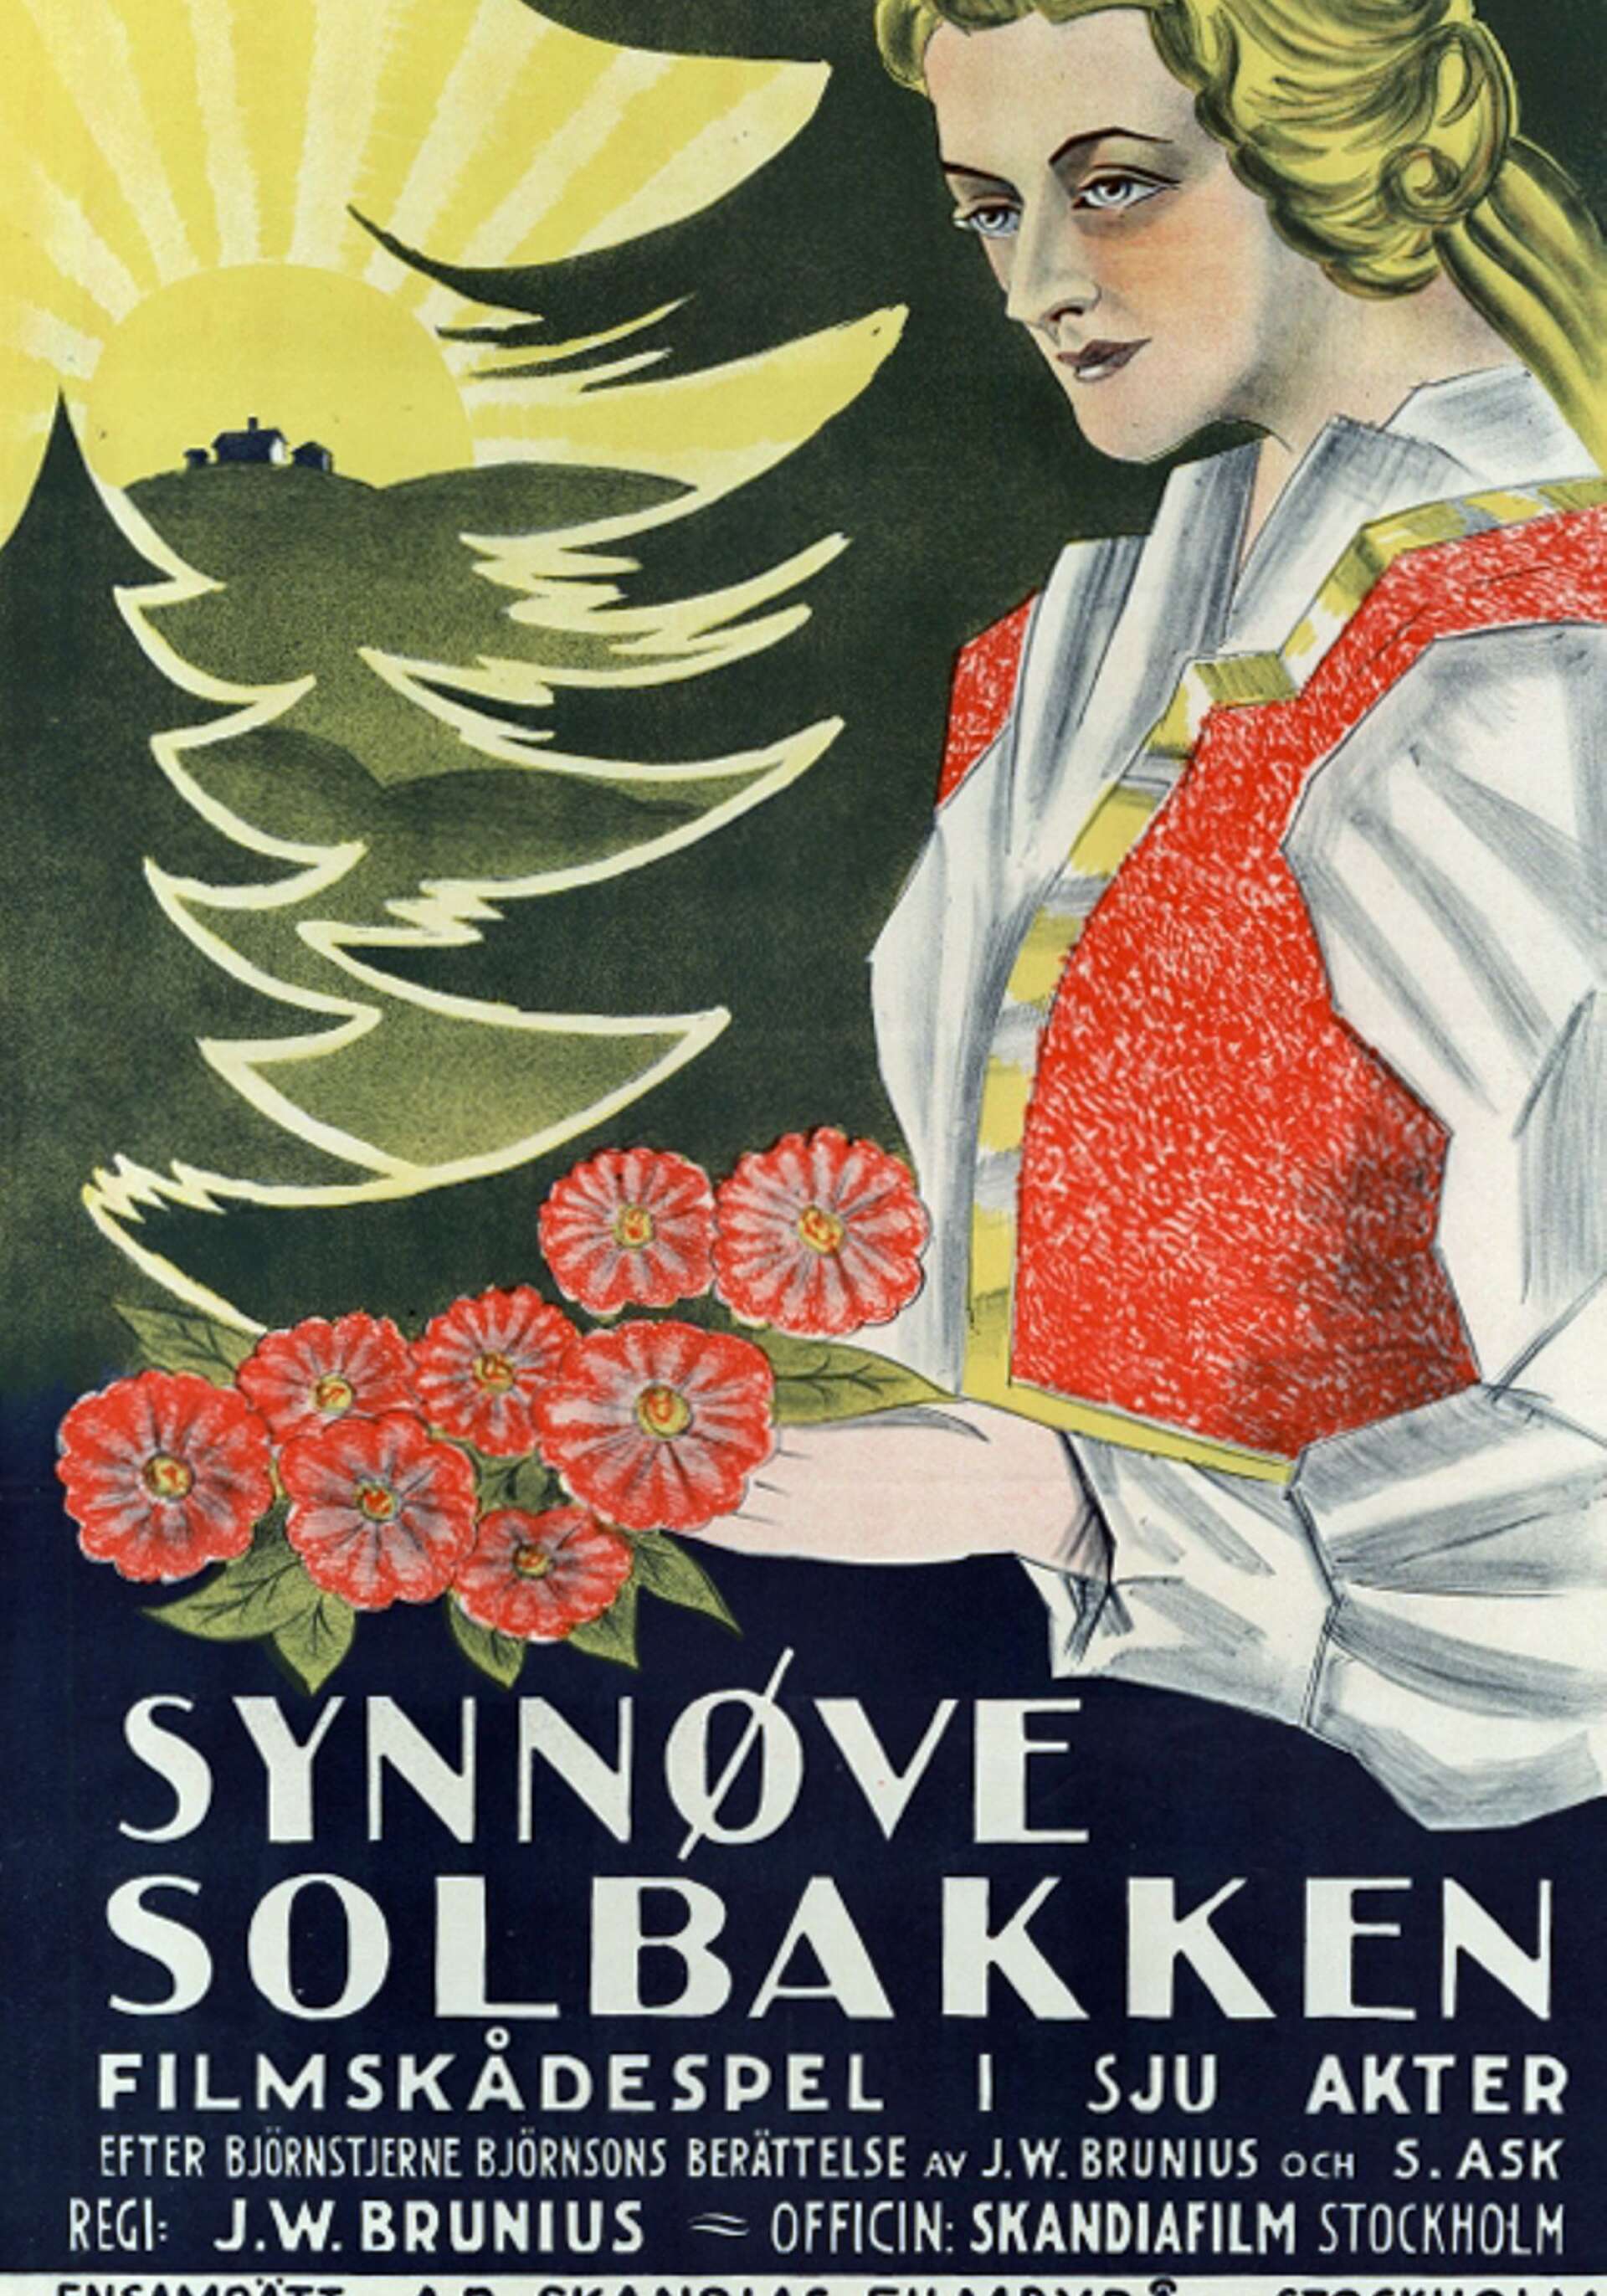 En affisch fanns förstås för dåtidens storfilm Synnöve Solbakken. Man kan väl gissa att den förekom i Säffle när Cosmorama skulle invigas.